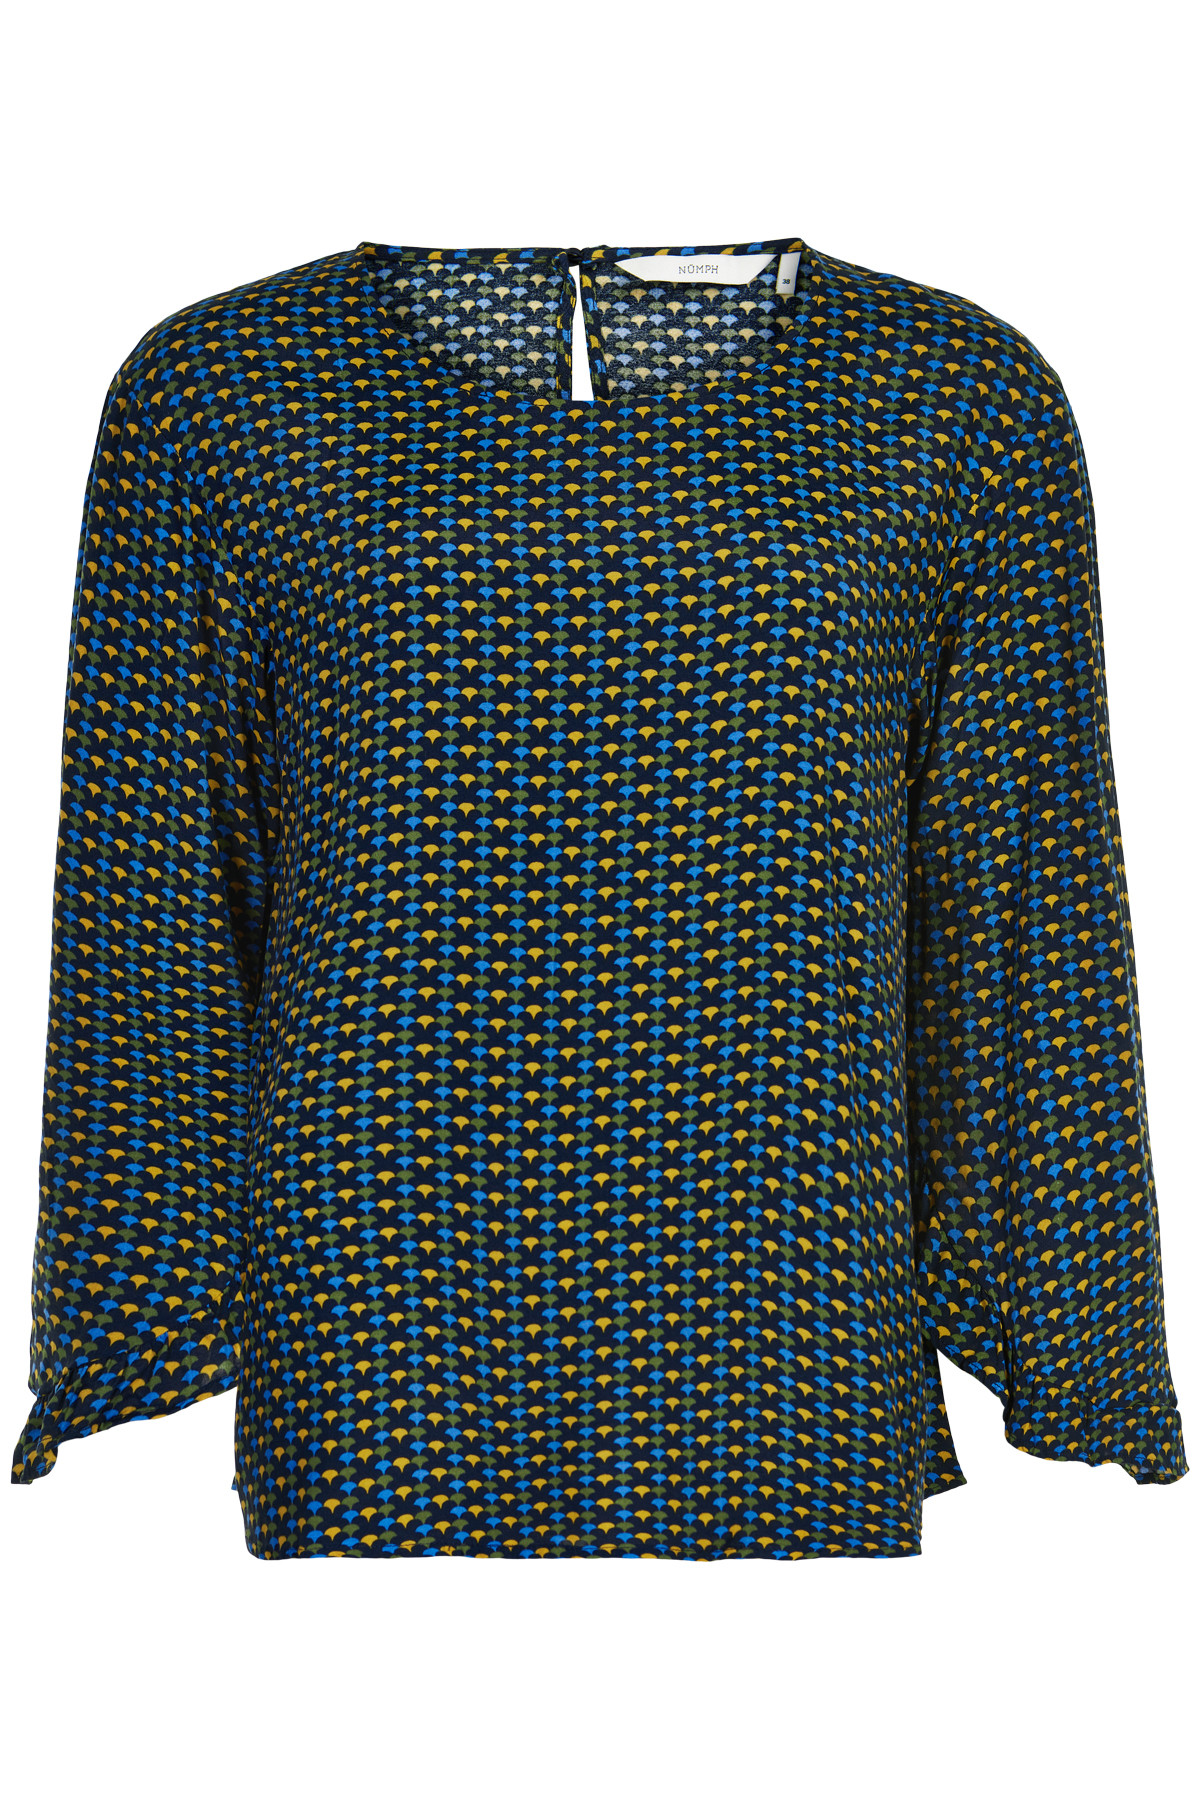 Nümph Nuailish Skjorte, Farve: Blå, Størrelse: 38, Dame